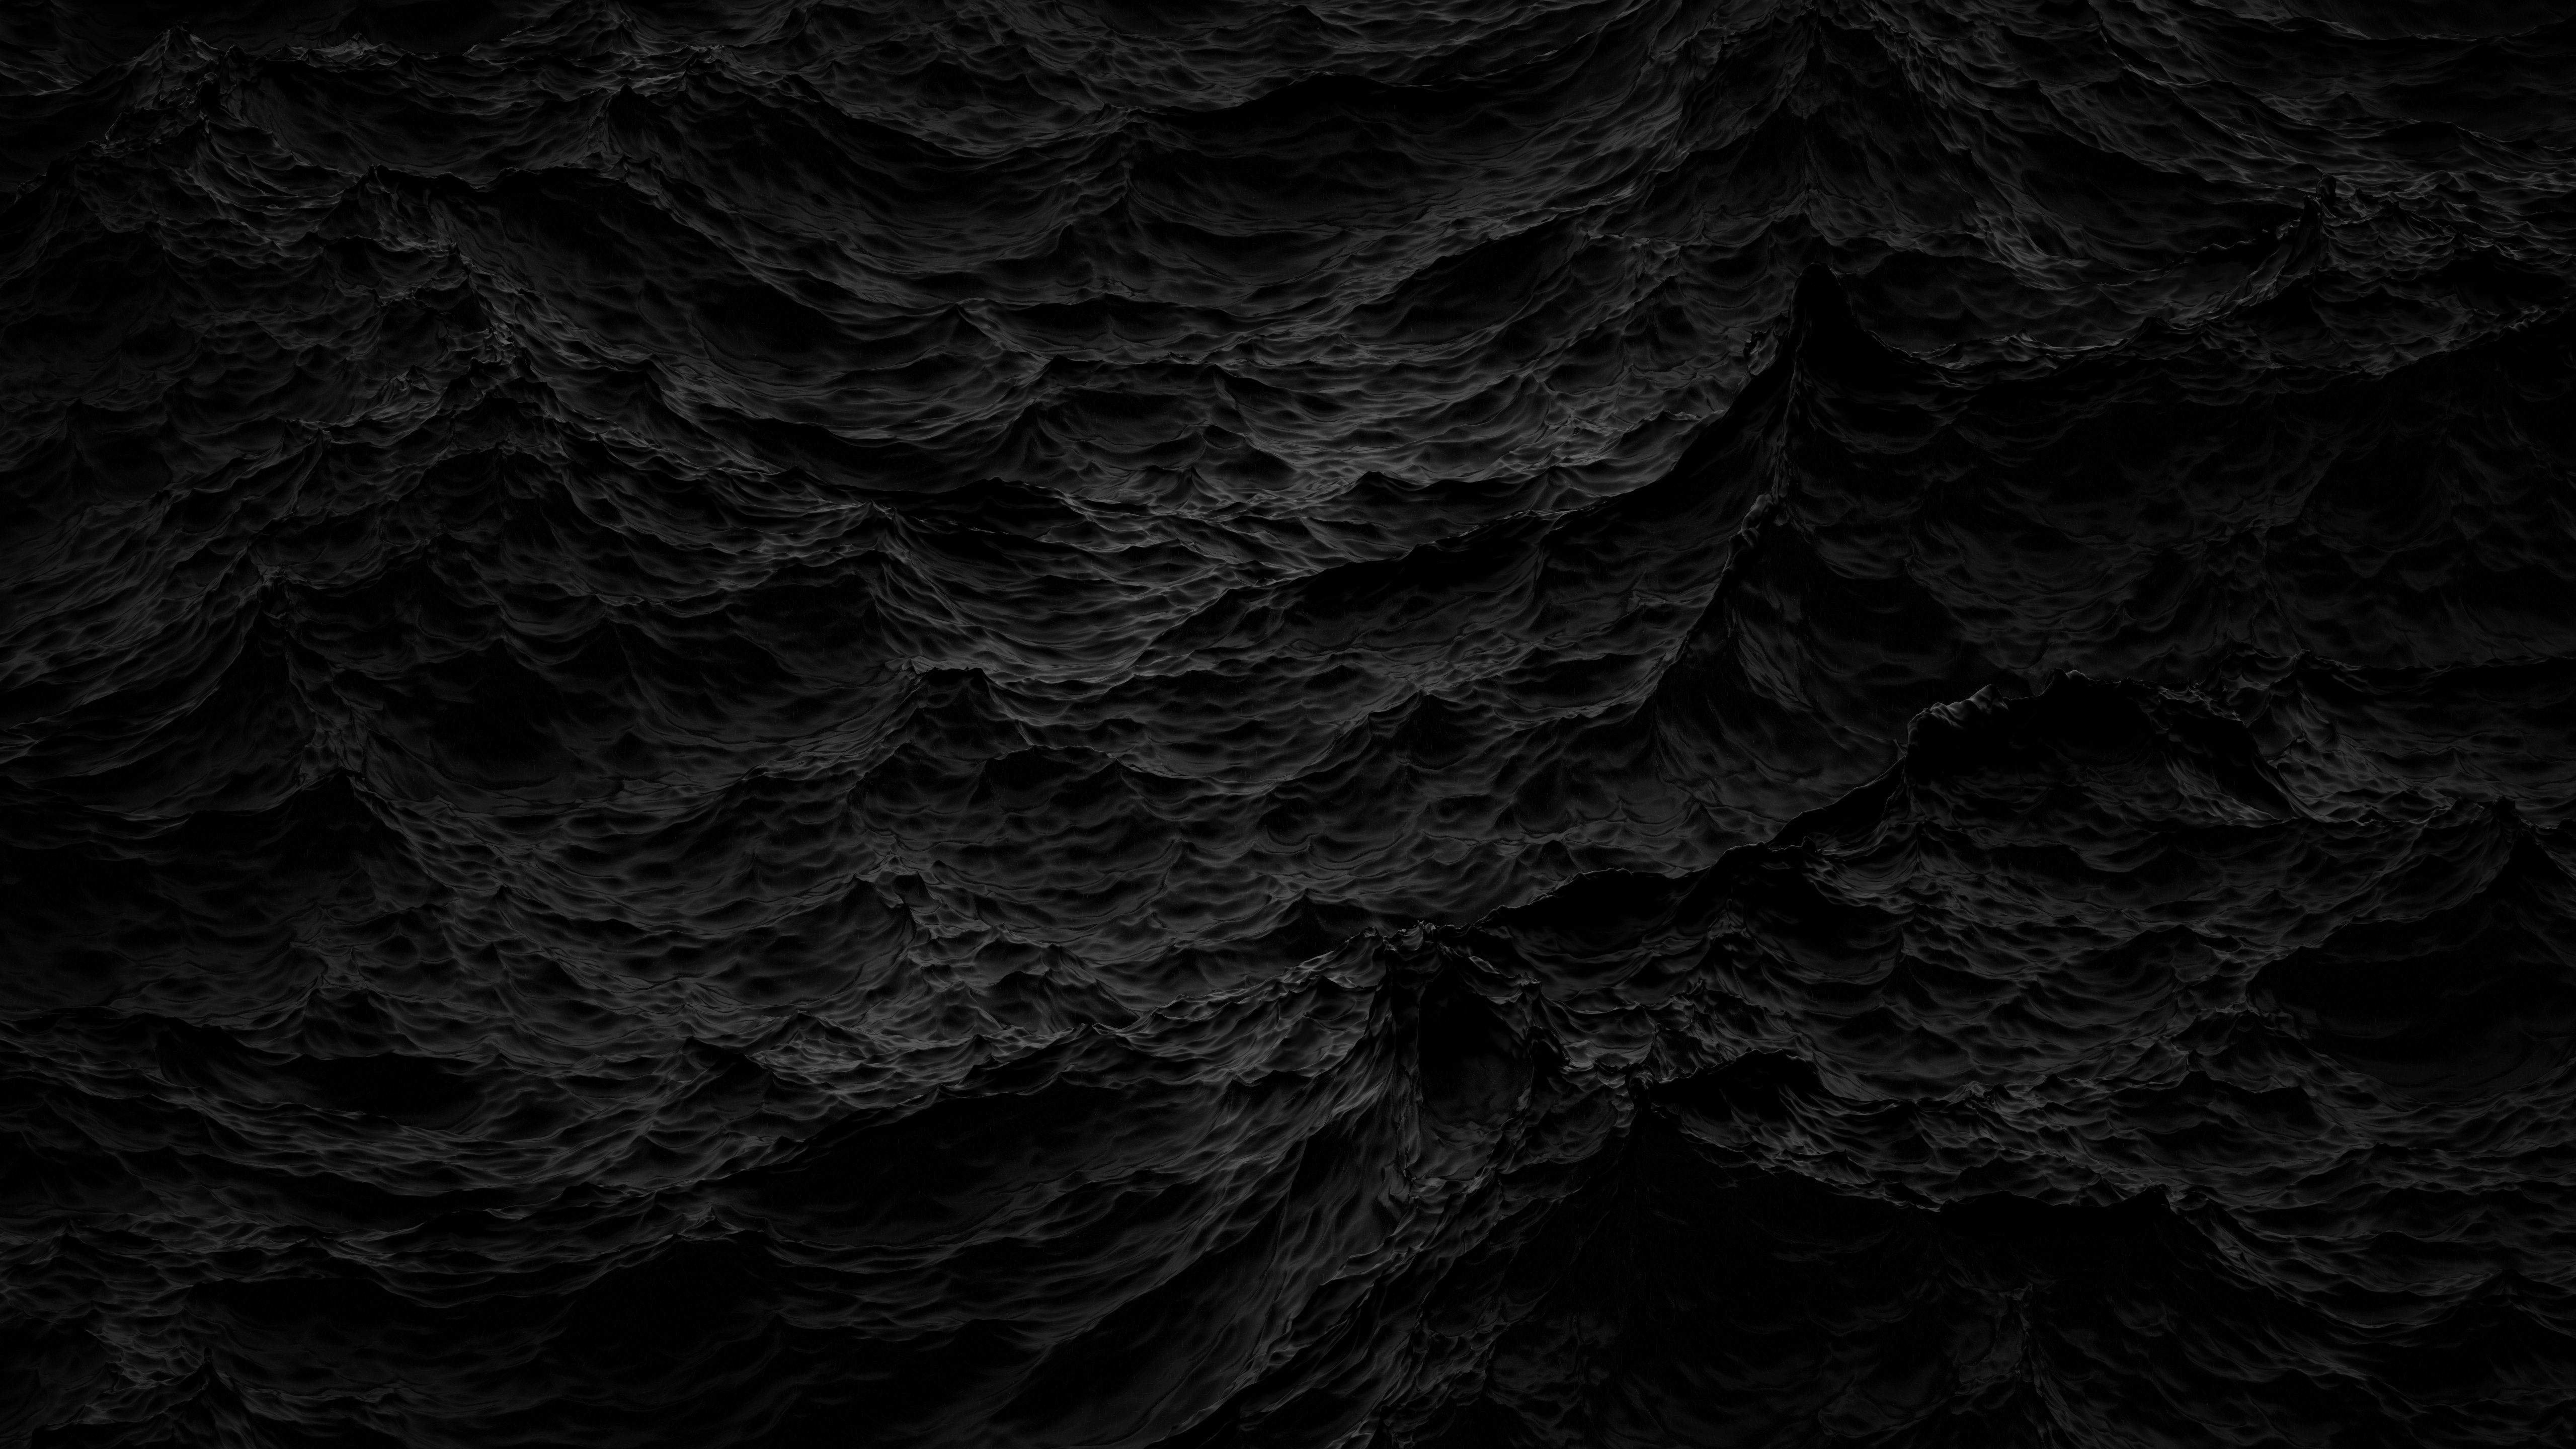 22+] Clean Black Wallpapers - WallpaperSafari